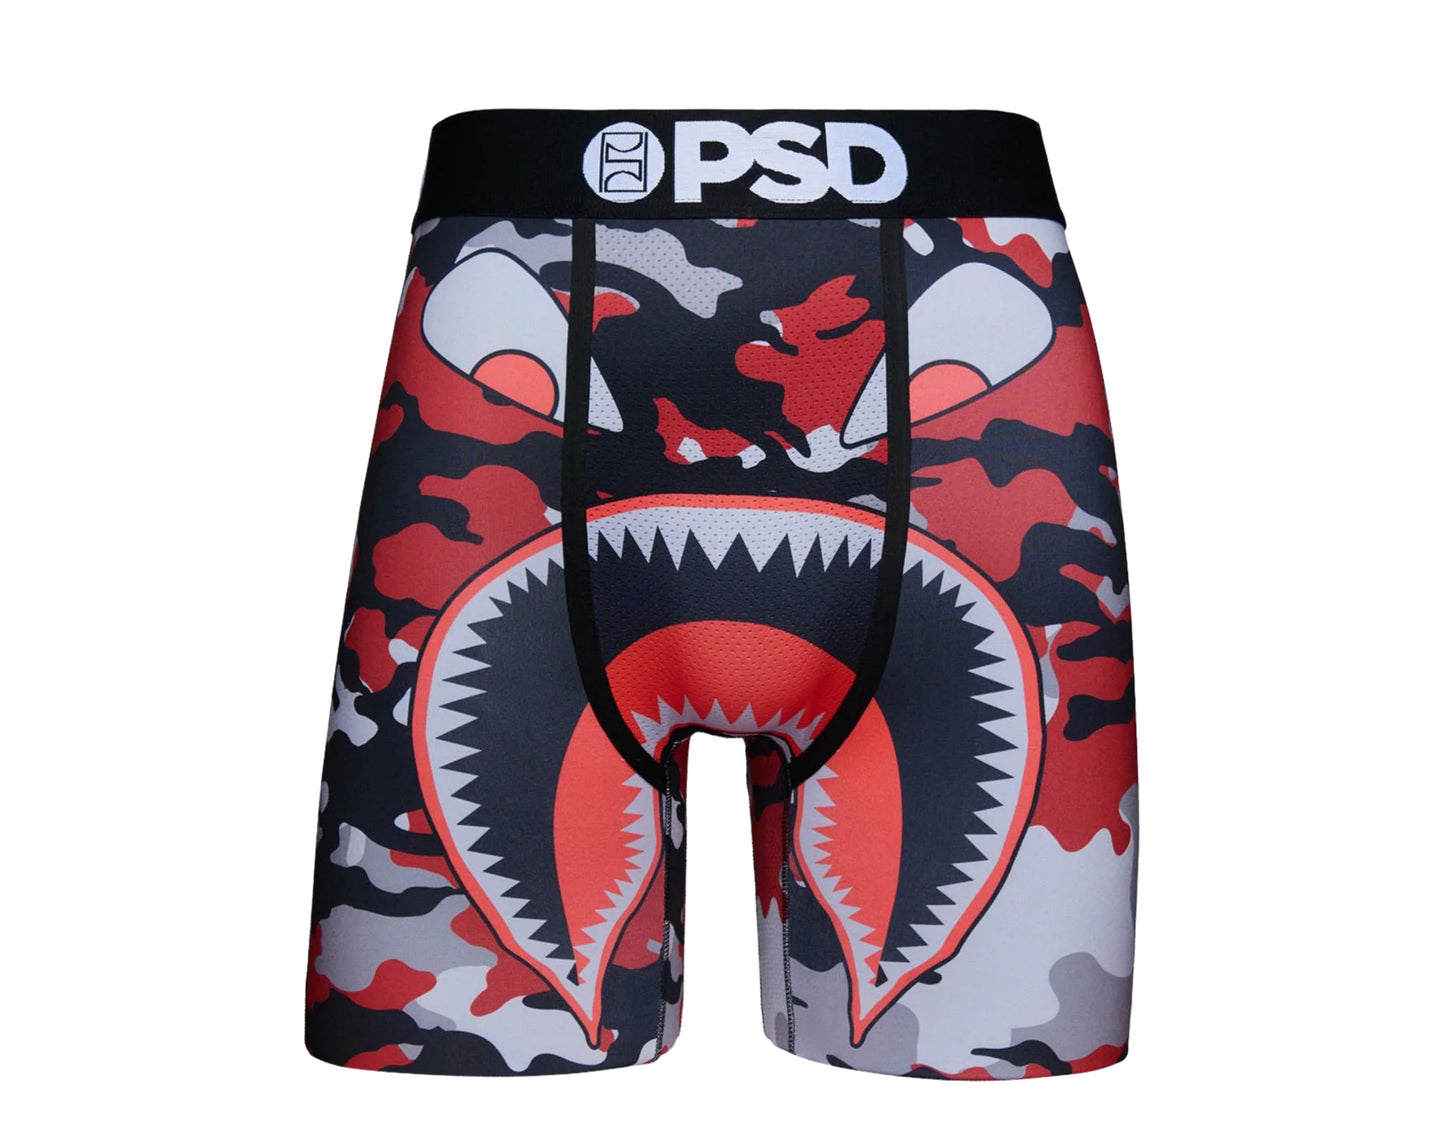 PSD Warface Jet Boxer Briefs Men's Underwear